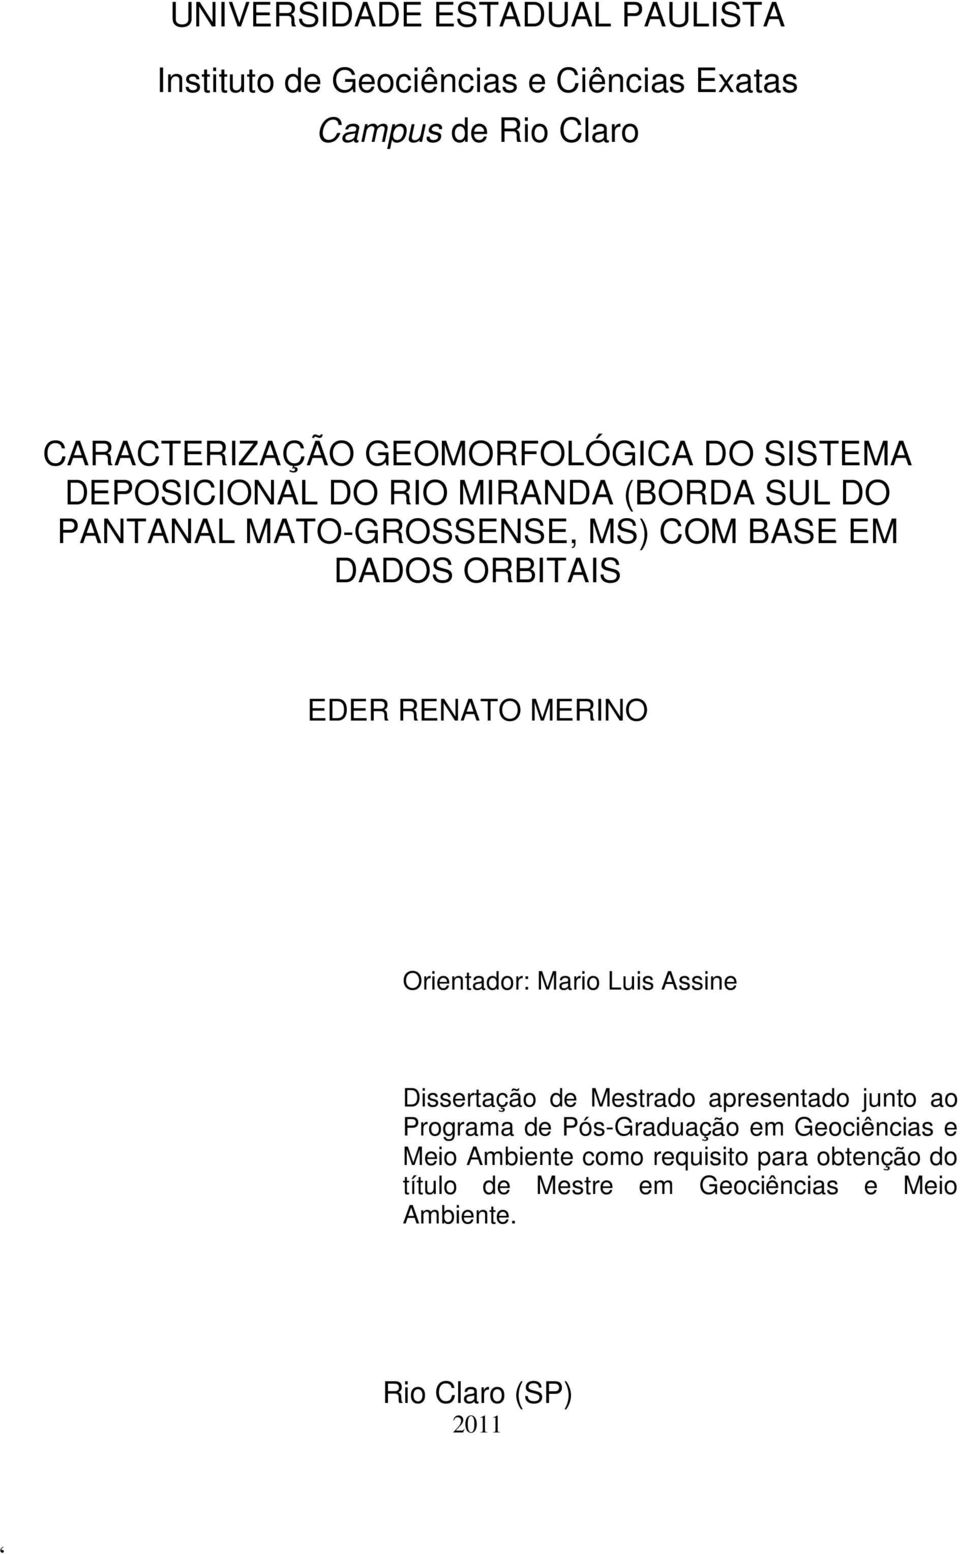 ORBITAIS EDER RENATO MERINO Orientador: Mario Luis Assine Dissertação de Mestrado apresentado junto ao Programa de